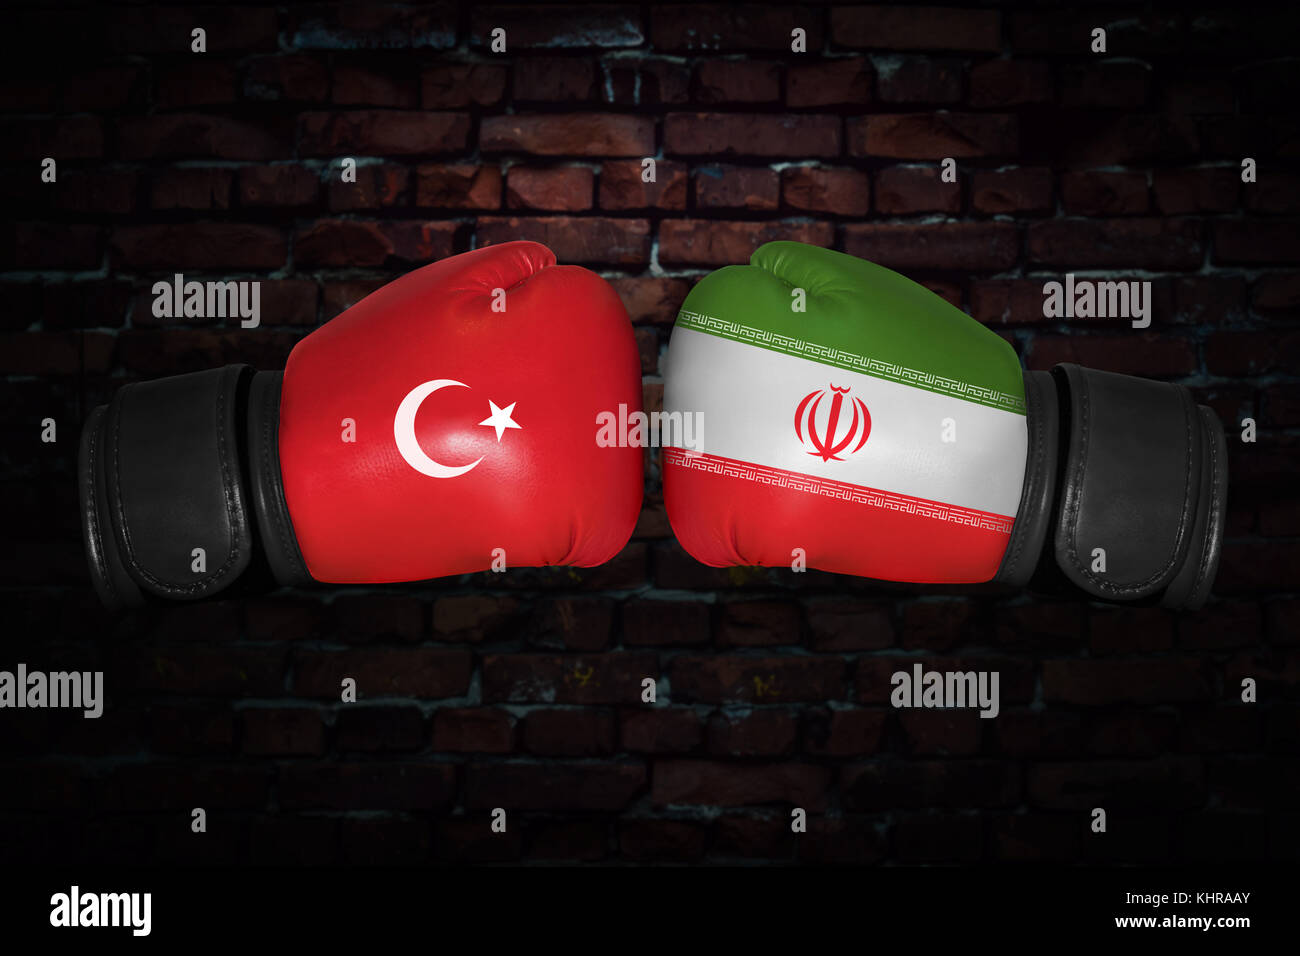 Un match de boxe. confrontation entre la Turquie et l'Iran. bain turc et iranien drapeaux nationaux sur des gants de boxe. Les compétitions sportives entre les deux cou Banque D'Images